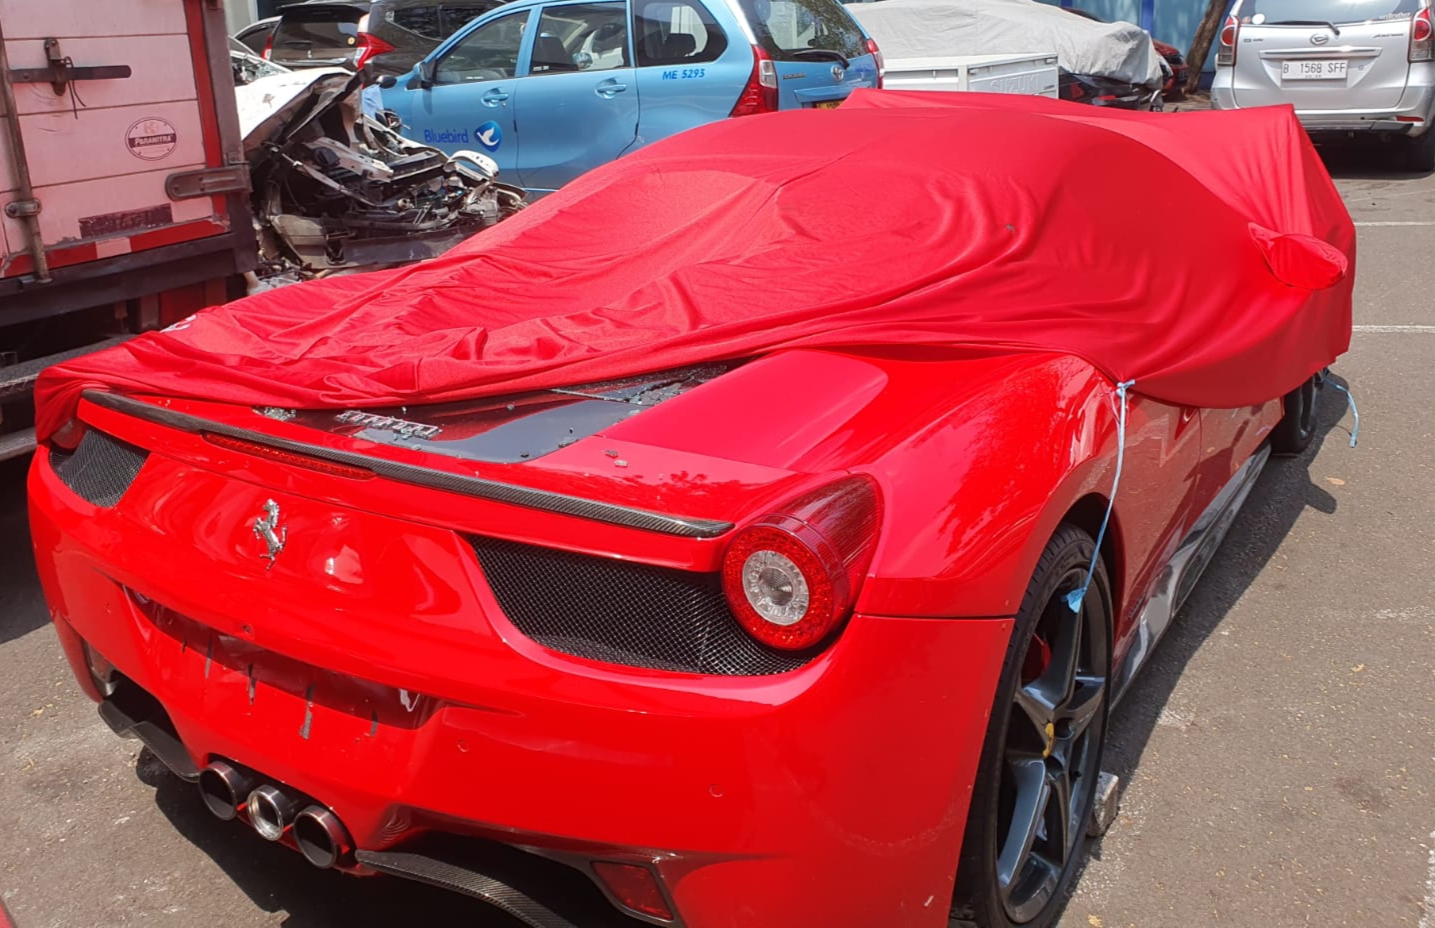 Penyidikan Ferrari Tabrak 5 Mobil-Motor Dihentikan, Alasannya: Tersangka dan Korban Damai